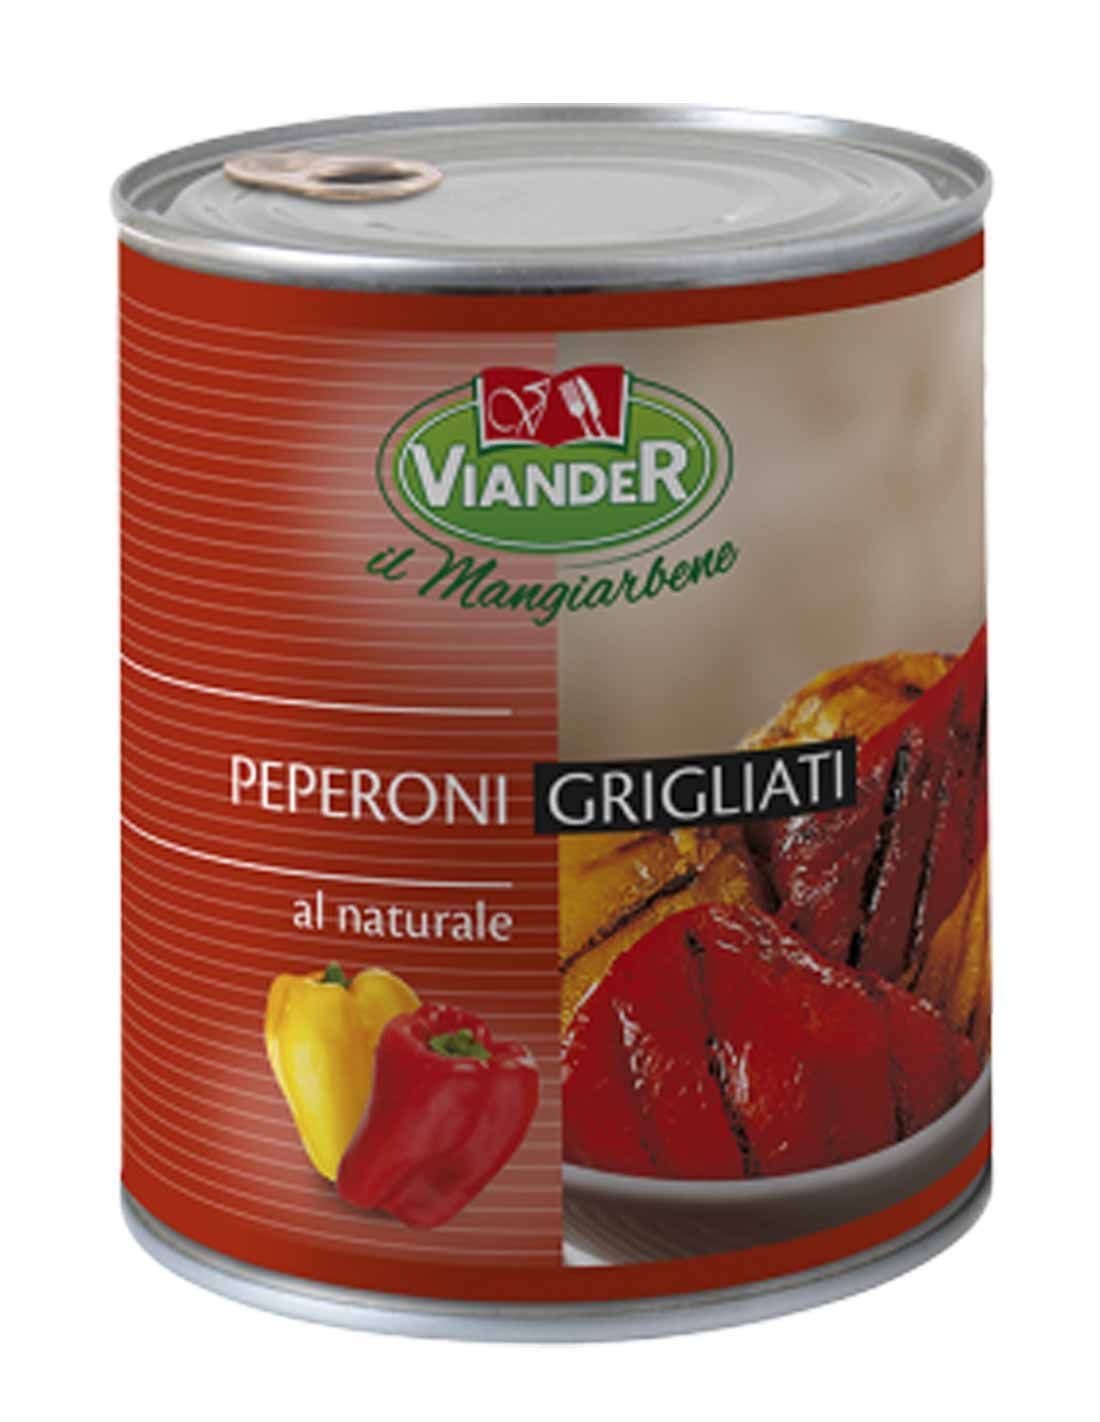 Viander - Peperoni grigliati Al naturale - Rossi e gialli conf. da 750 g